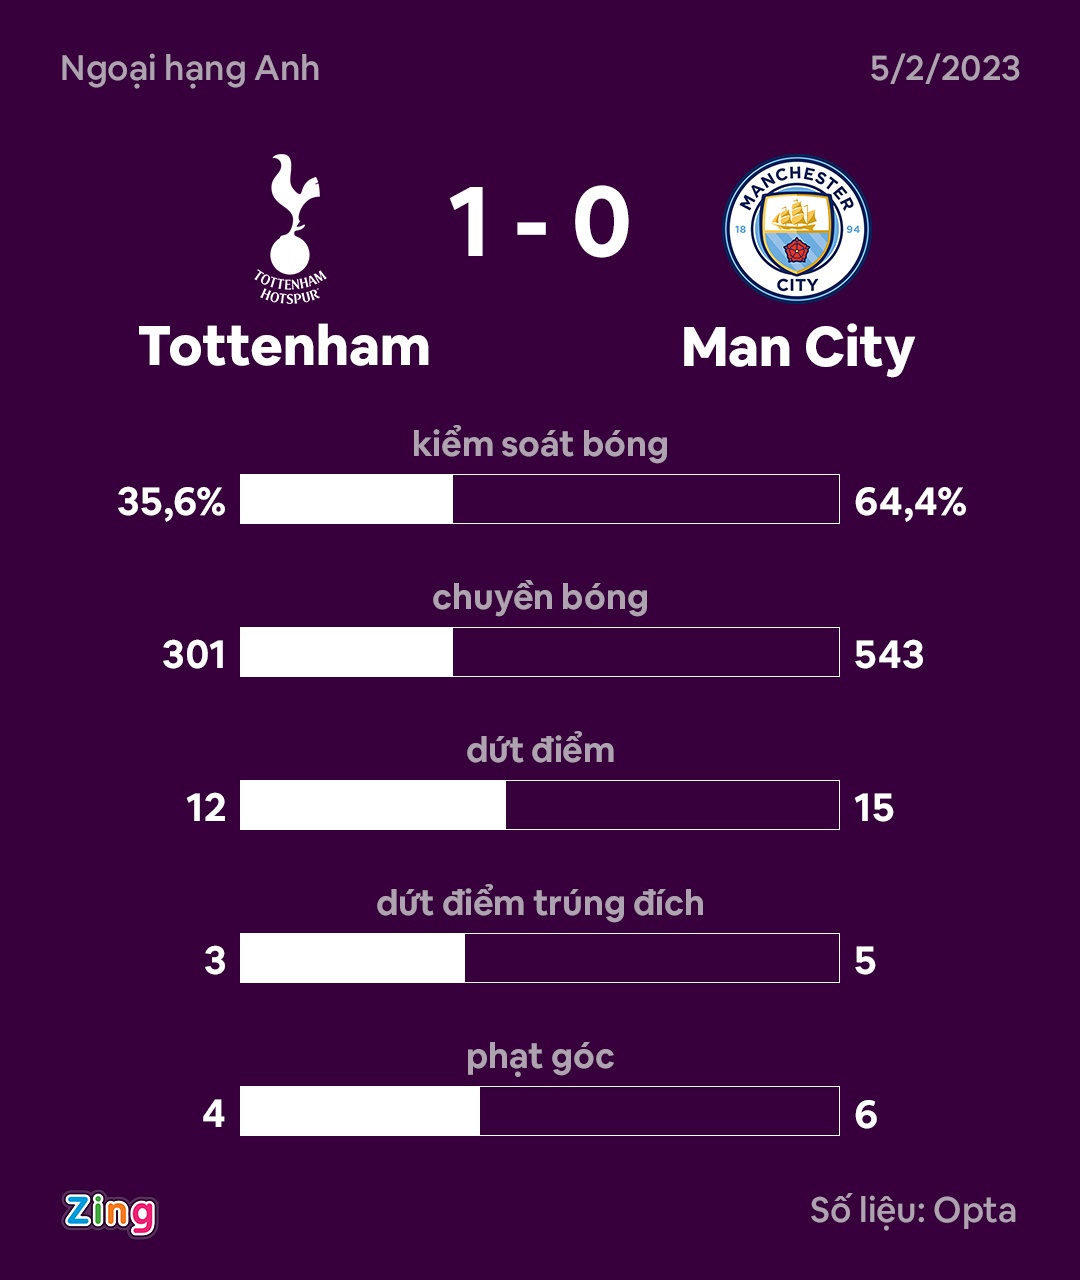 Man City thua trận thứ 5 liên tiếp trên sân của Tottenham - ảnh 4